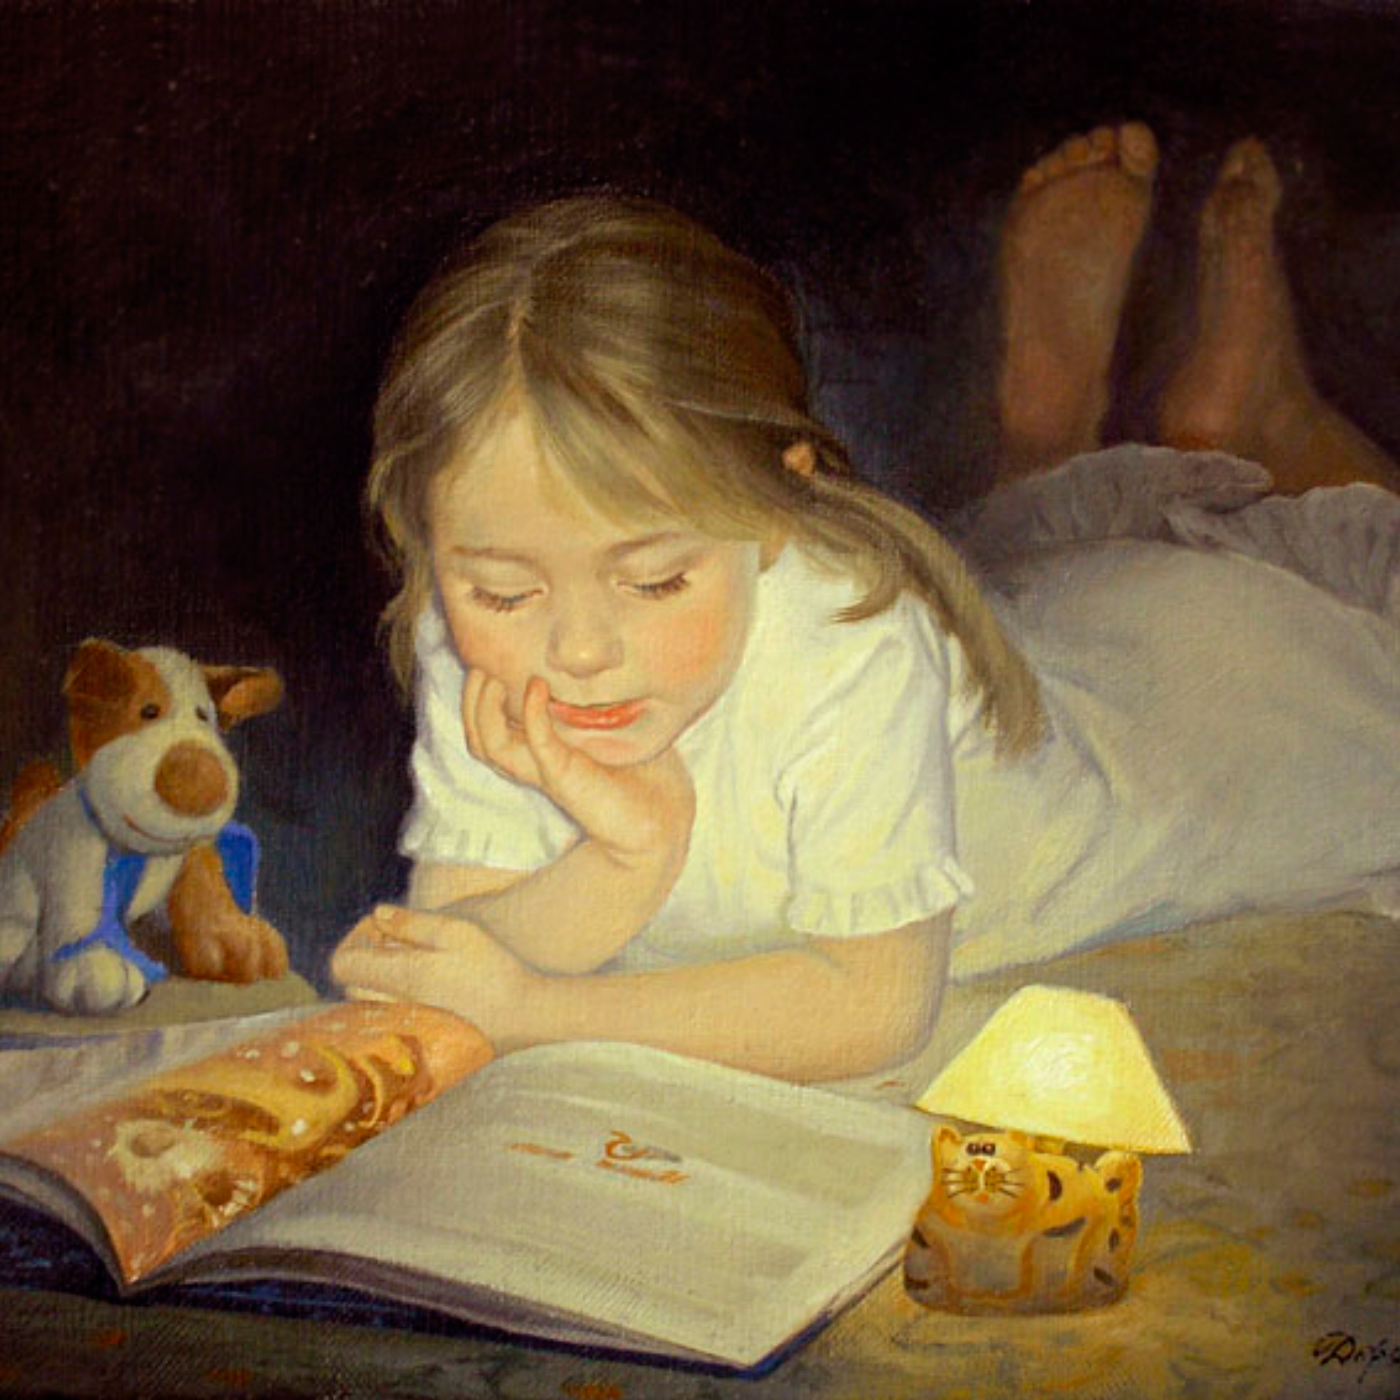 Звезда читает сказку. Дети в живописи. Чтение картины художников.